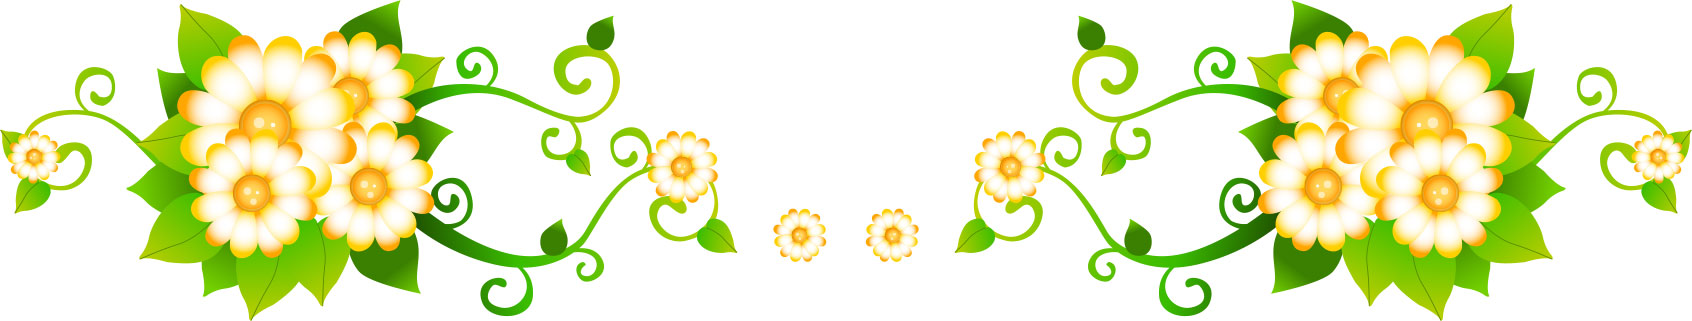 画像サンプル-花のライン・黄色